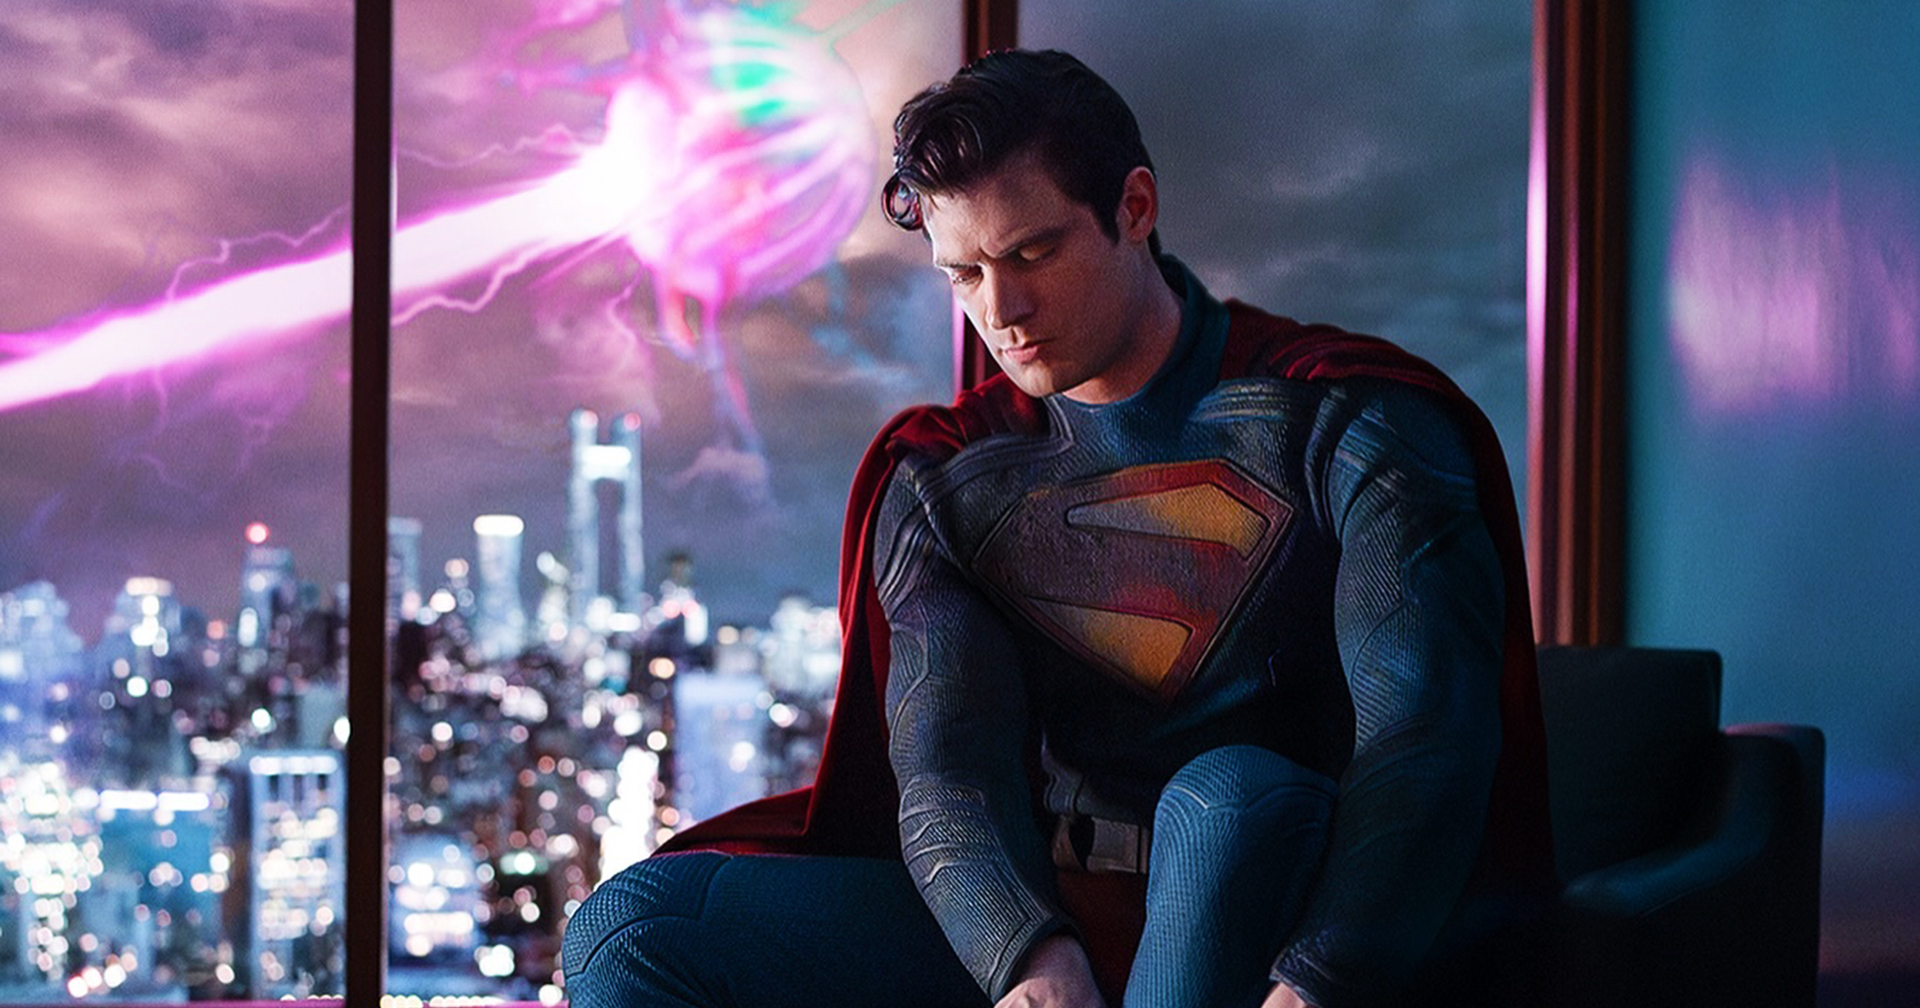 เจมส์ กันน์ ได้สร้างเซอร์ไพรส์ด้วยการโพสต์ภาพแรกของซูเปอร์แมนเวอร์ชันของ เดวิด คอเรนสเว็ต ในภาพยนตร์ Superman